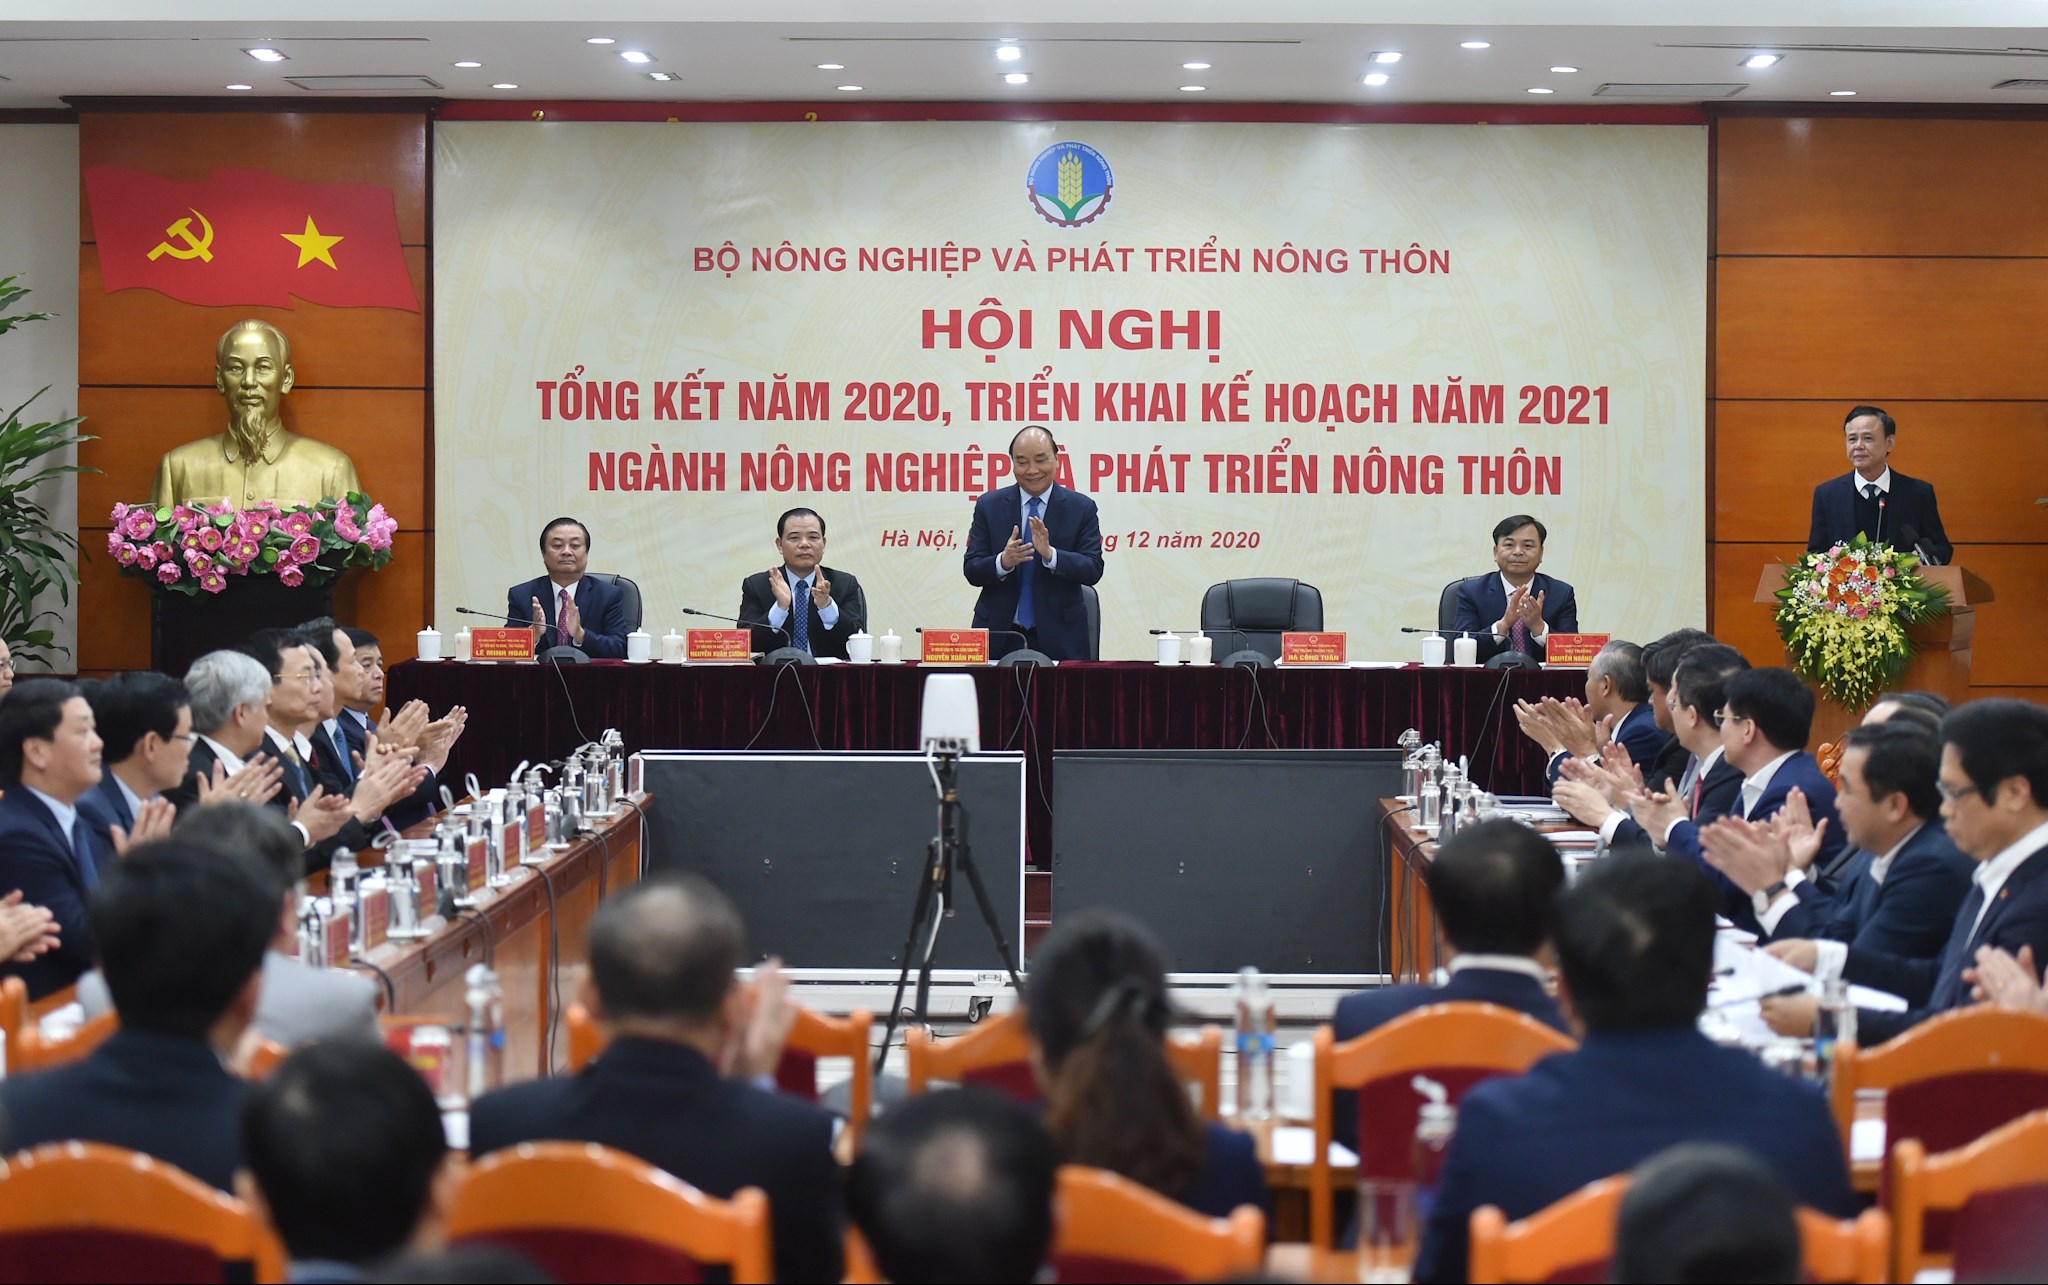 Thủ tướng Nguyễn Xuân Phúc dự Hội nghị trực tuyến tổng kết ngành NN&PTNT năm 2020, triển khai kế hoạch năm 2021